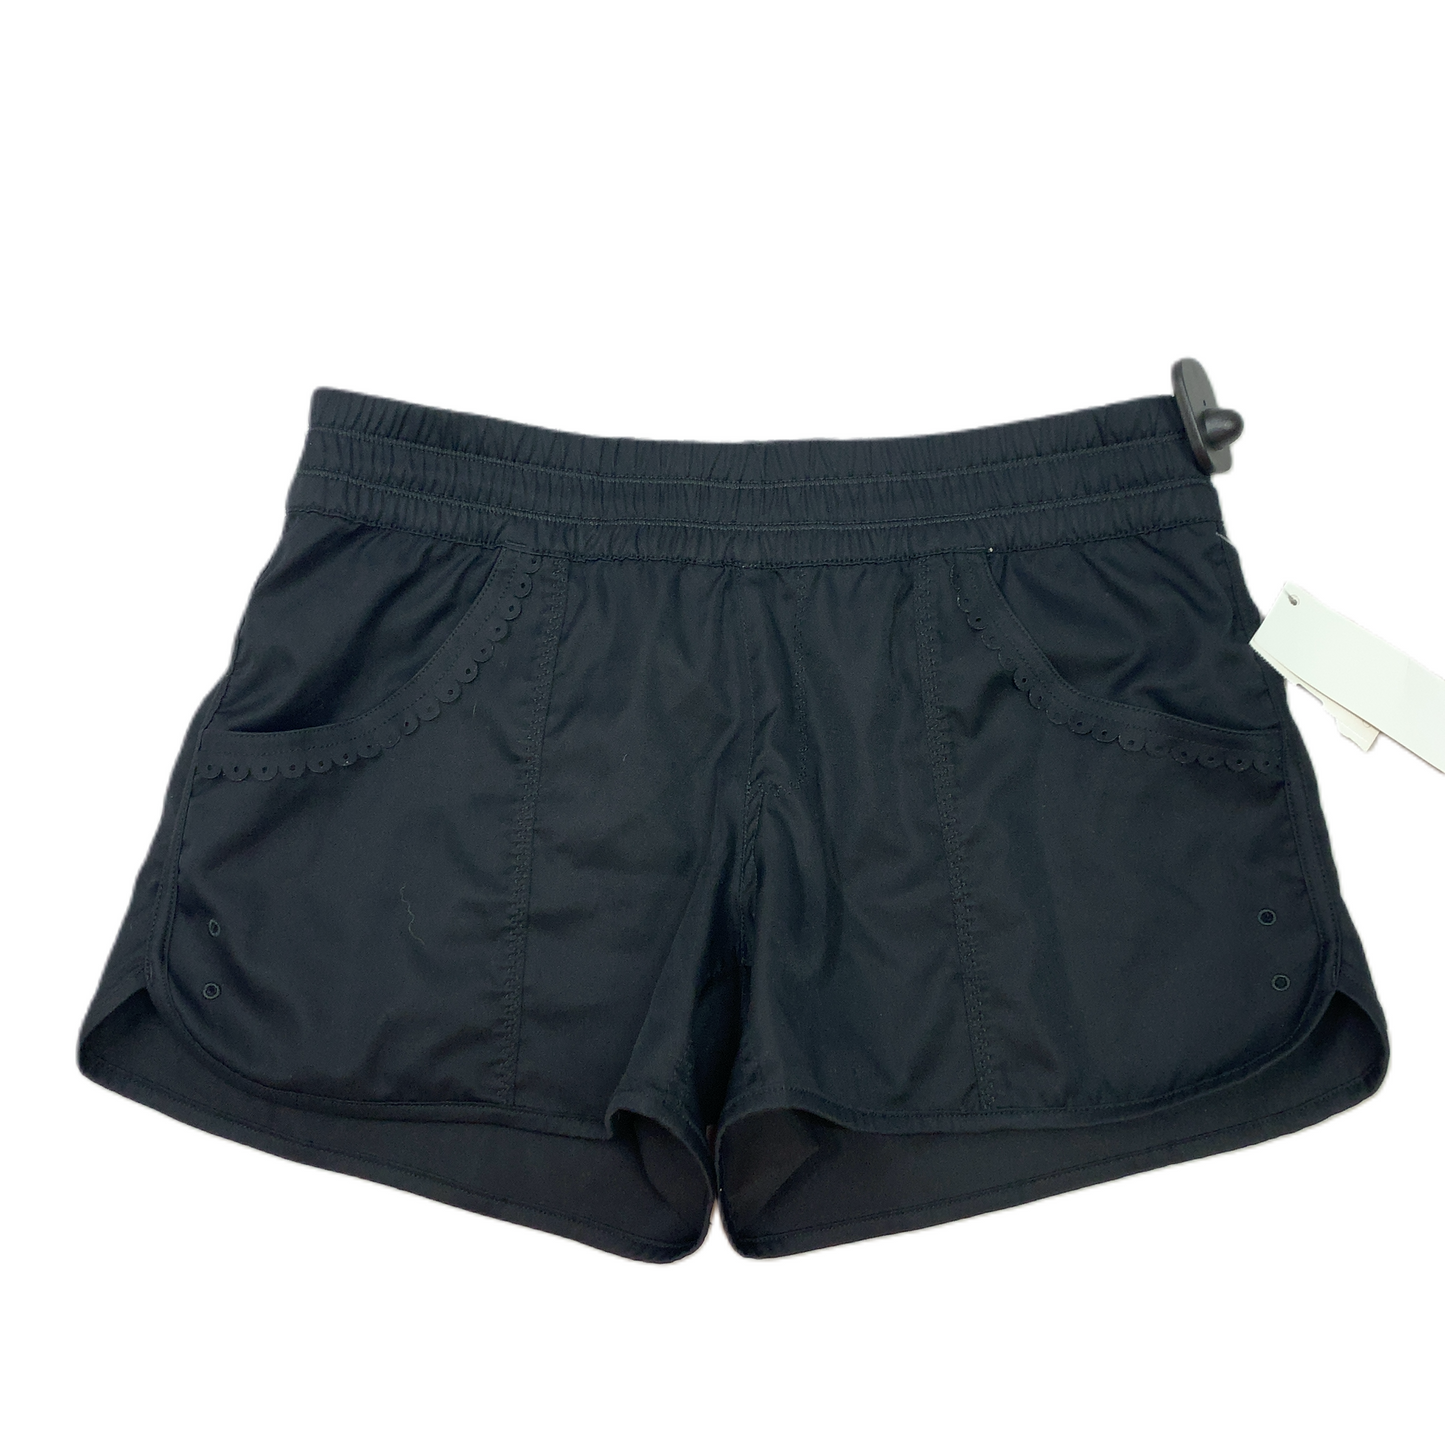 Black  Athletic Shorts By Lululemon  Size: S